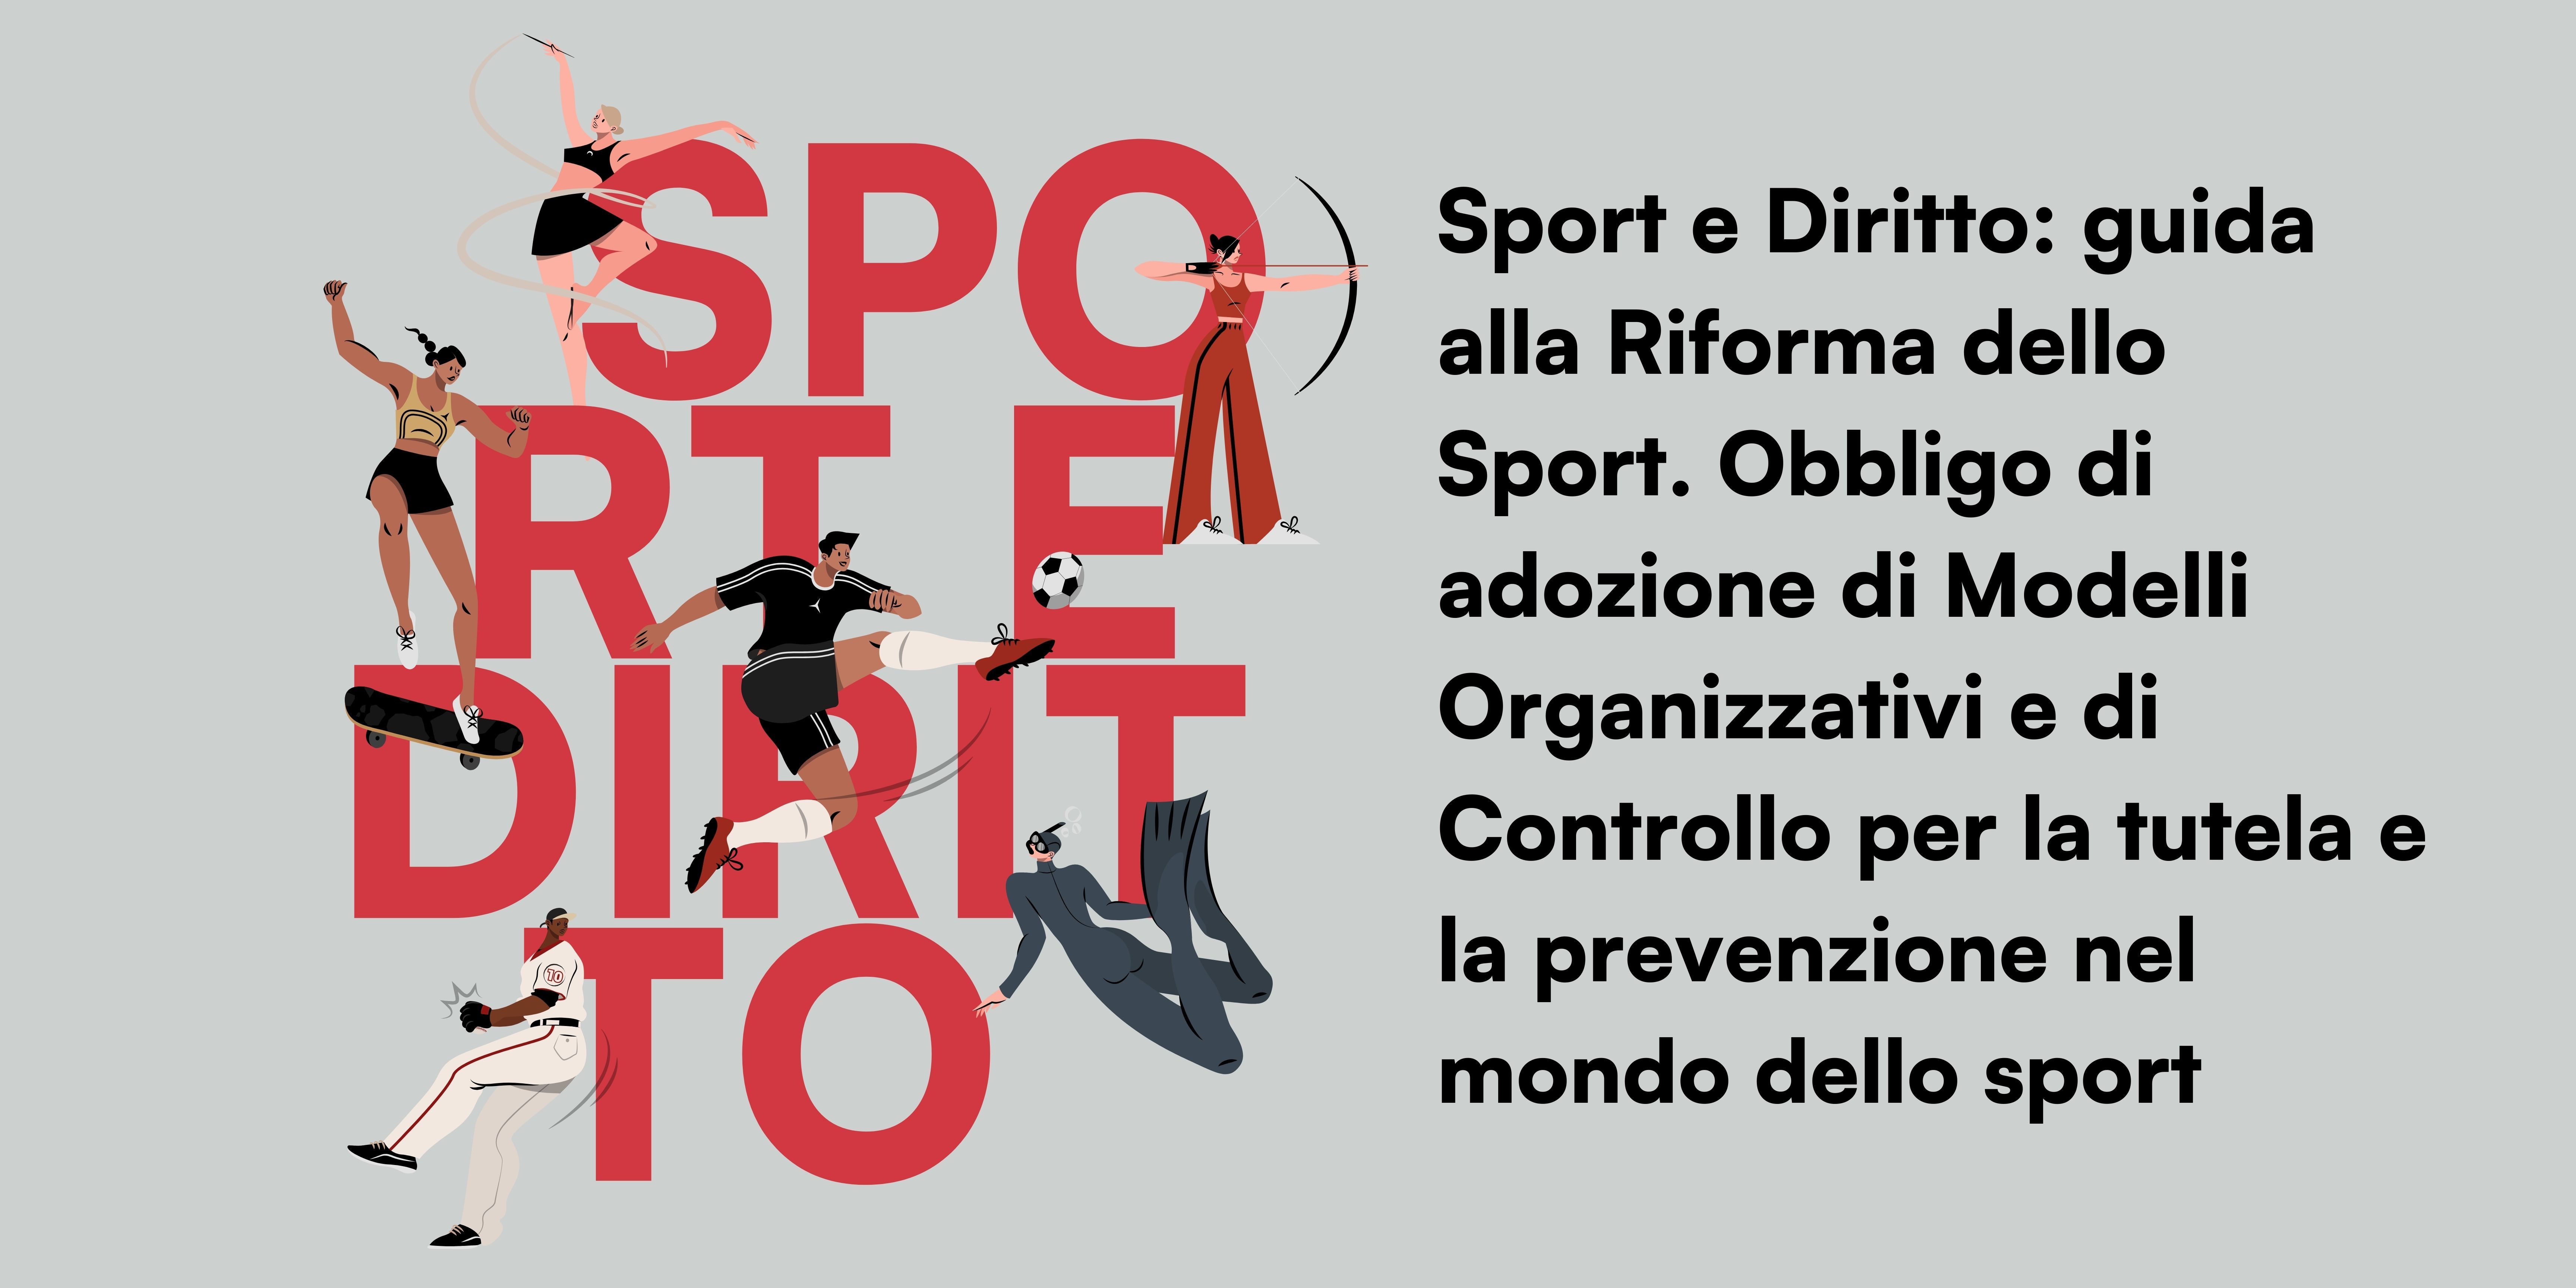 Immagine copertina Webinar: Sport e Diritto, una guida alla Riforma dello Sport